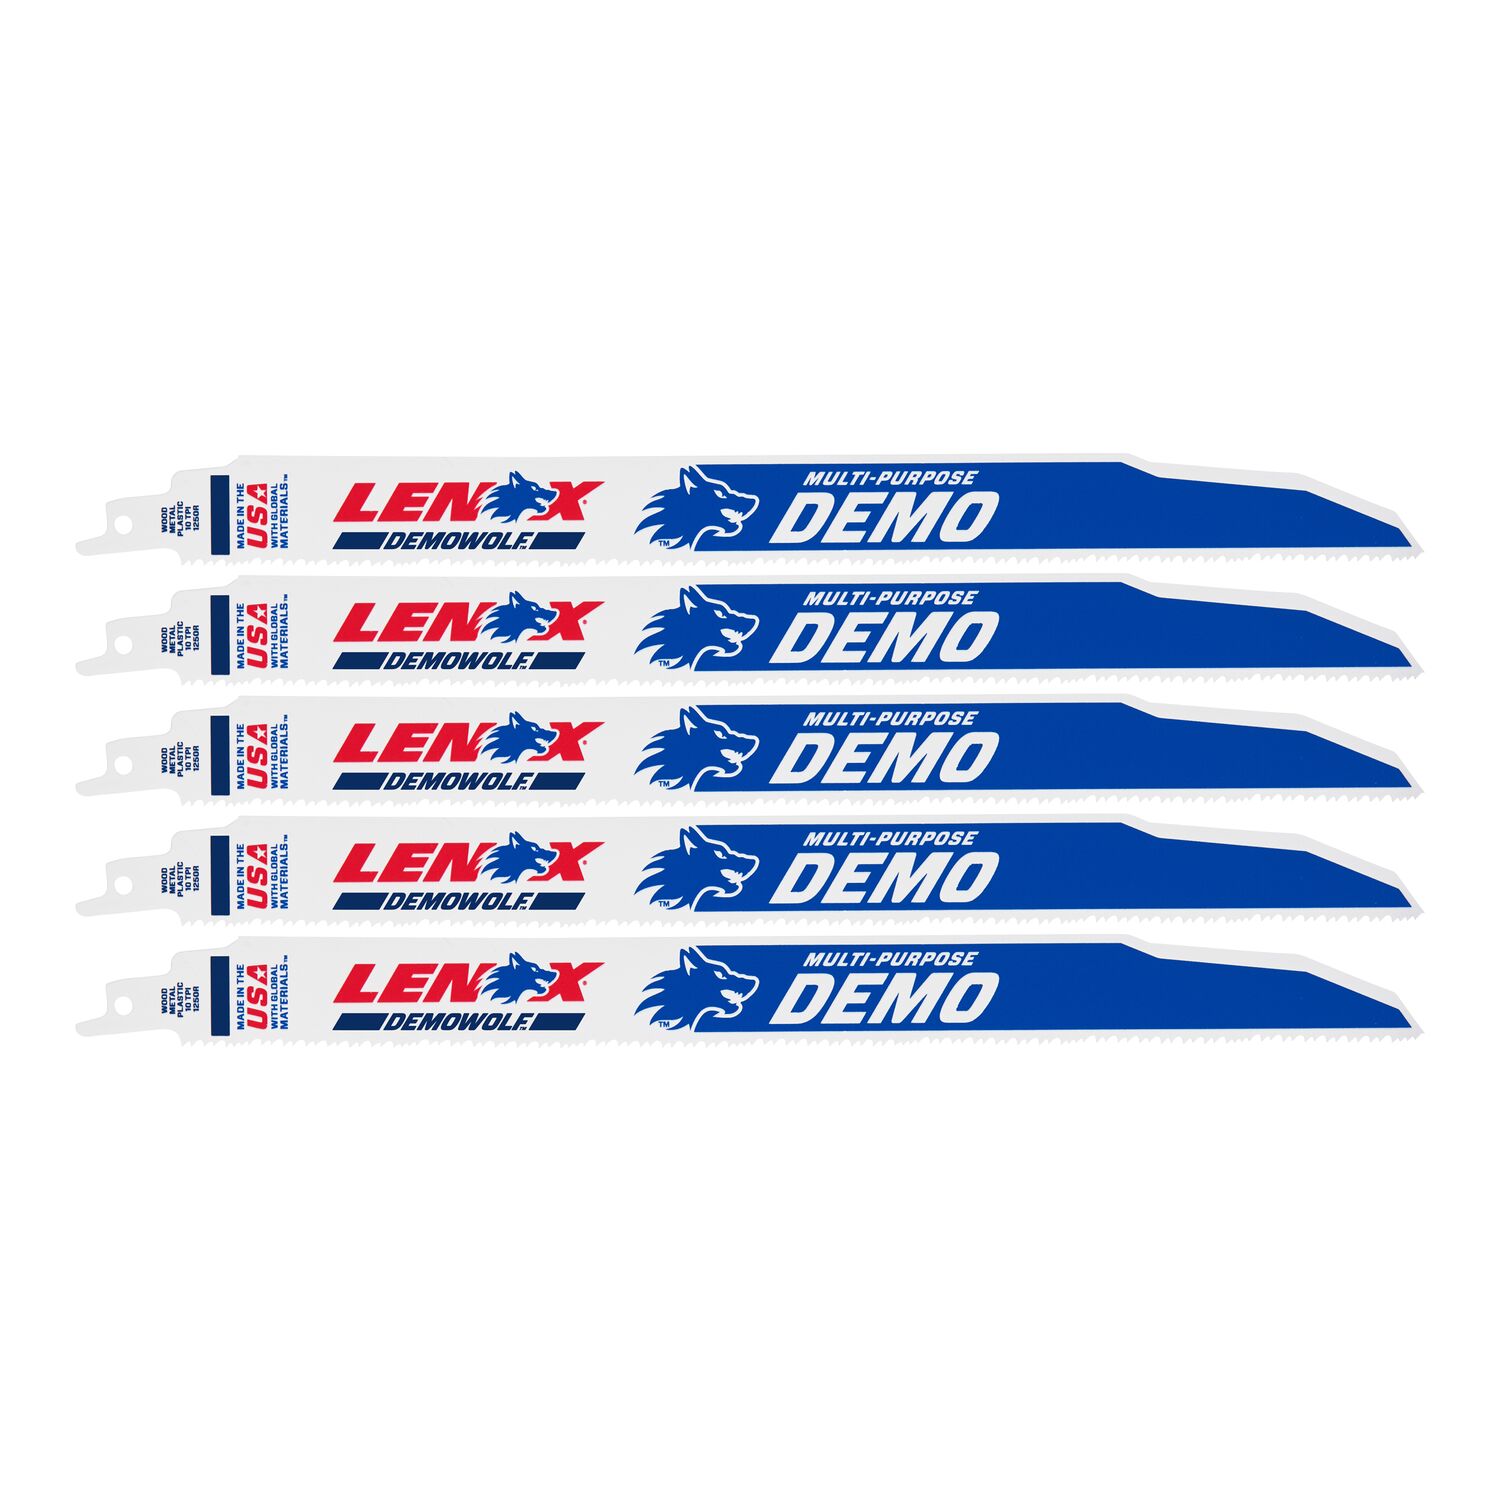 LENOX LXAR1250R